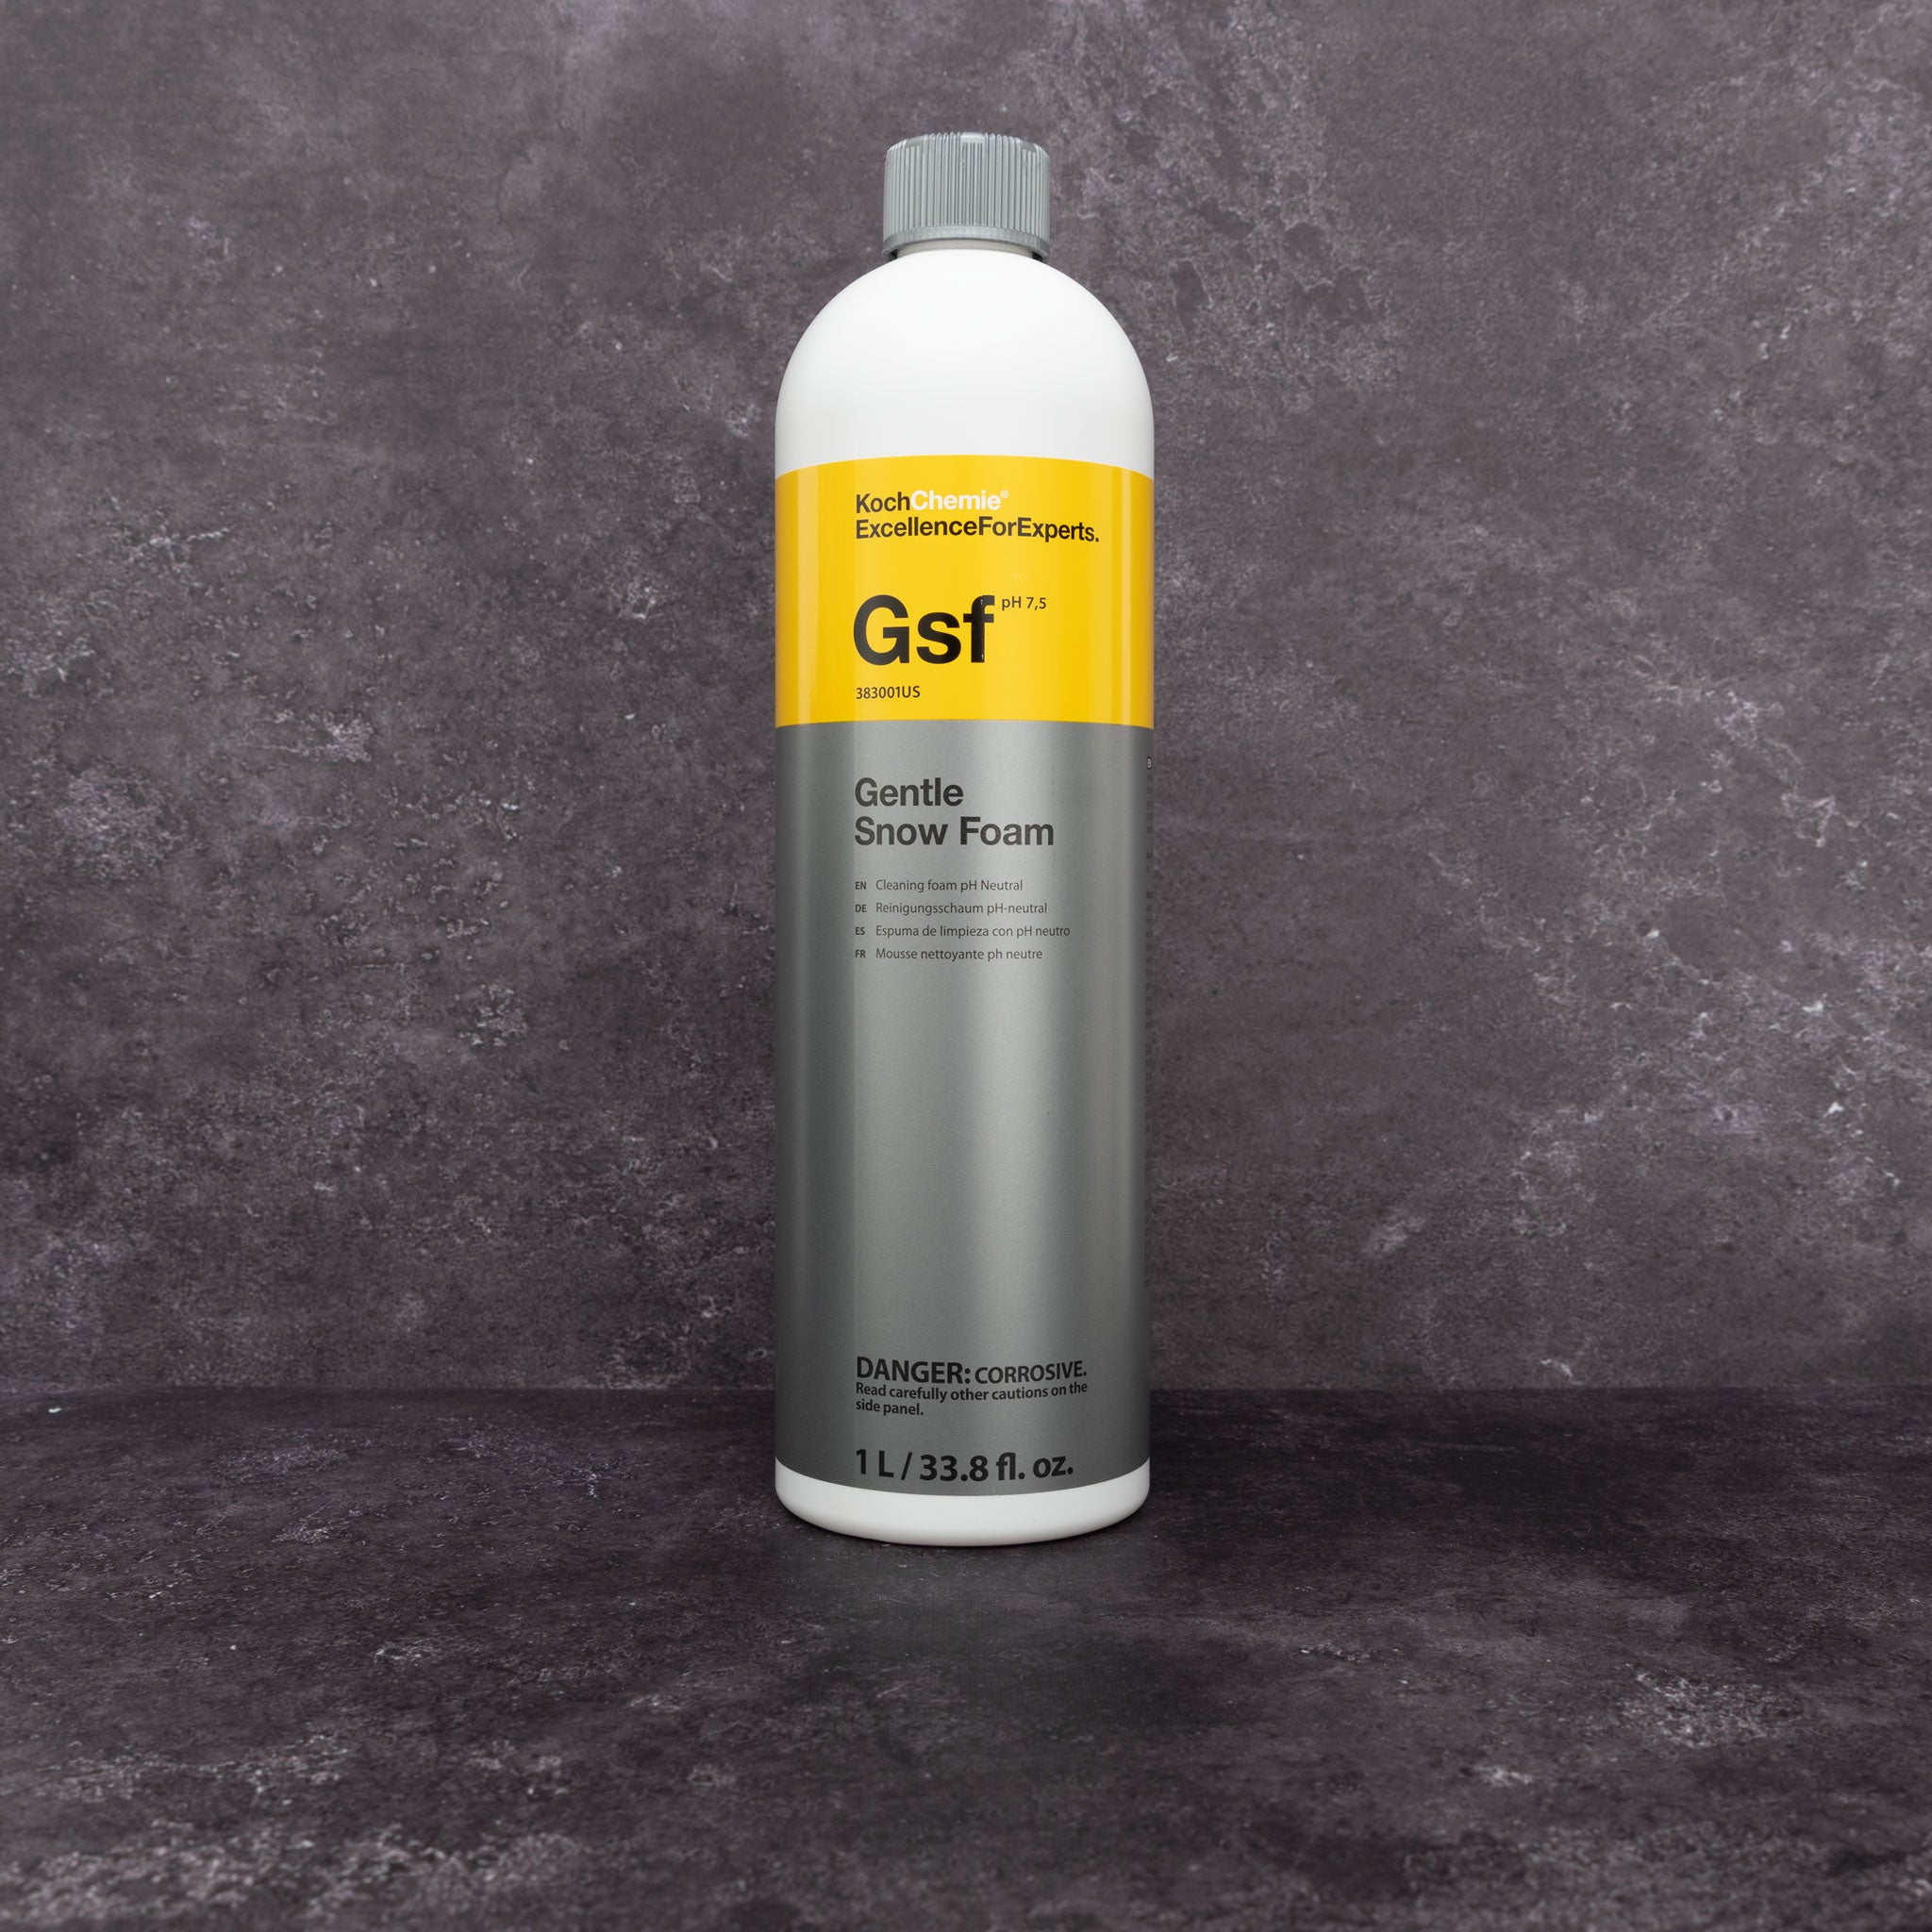 Koch Chemie GSF (Gentle Snow Foam) 1L